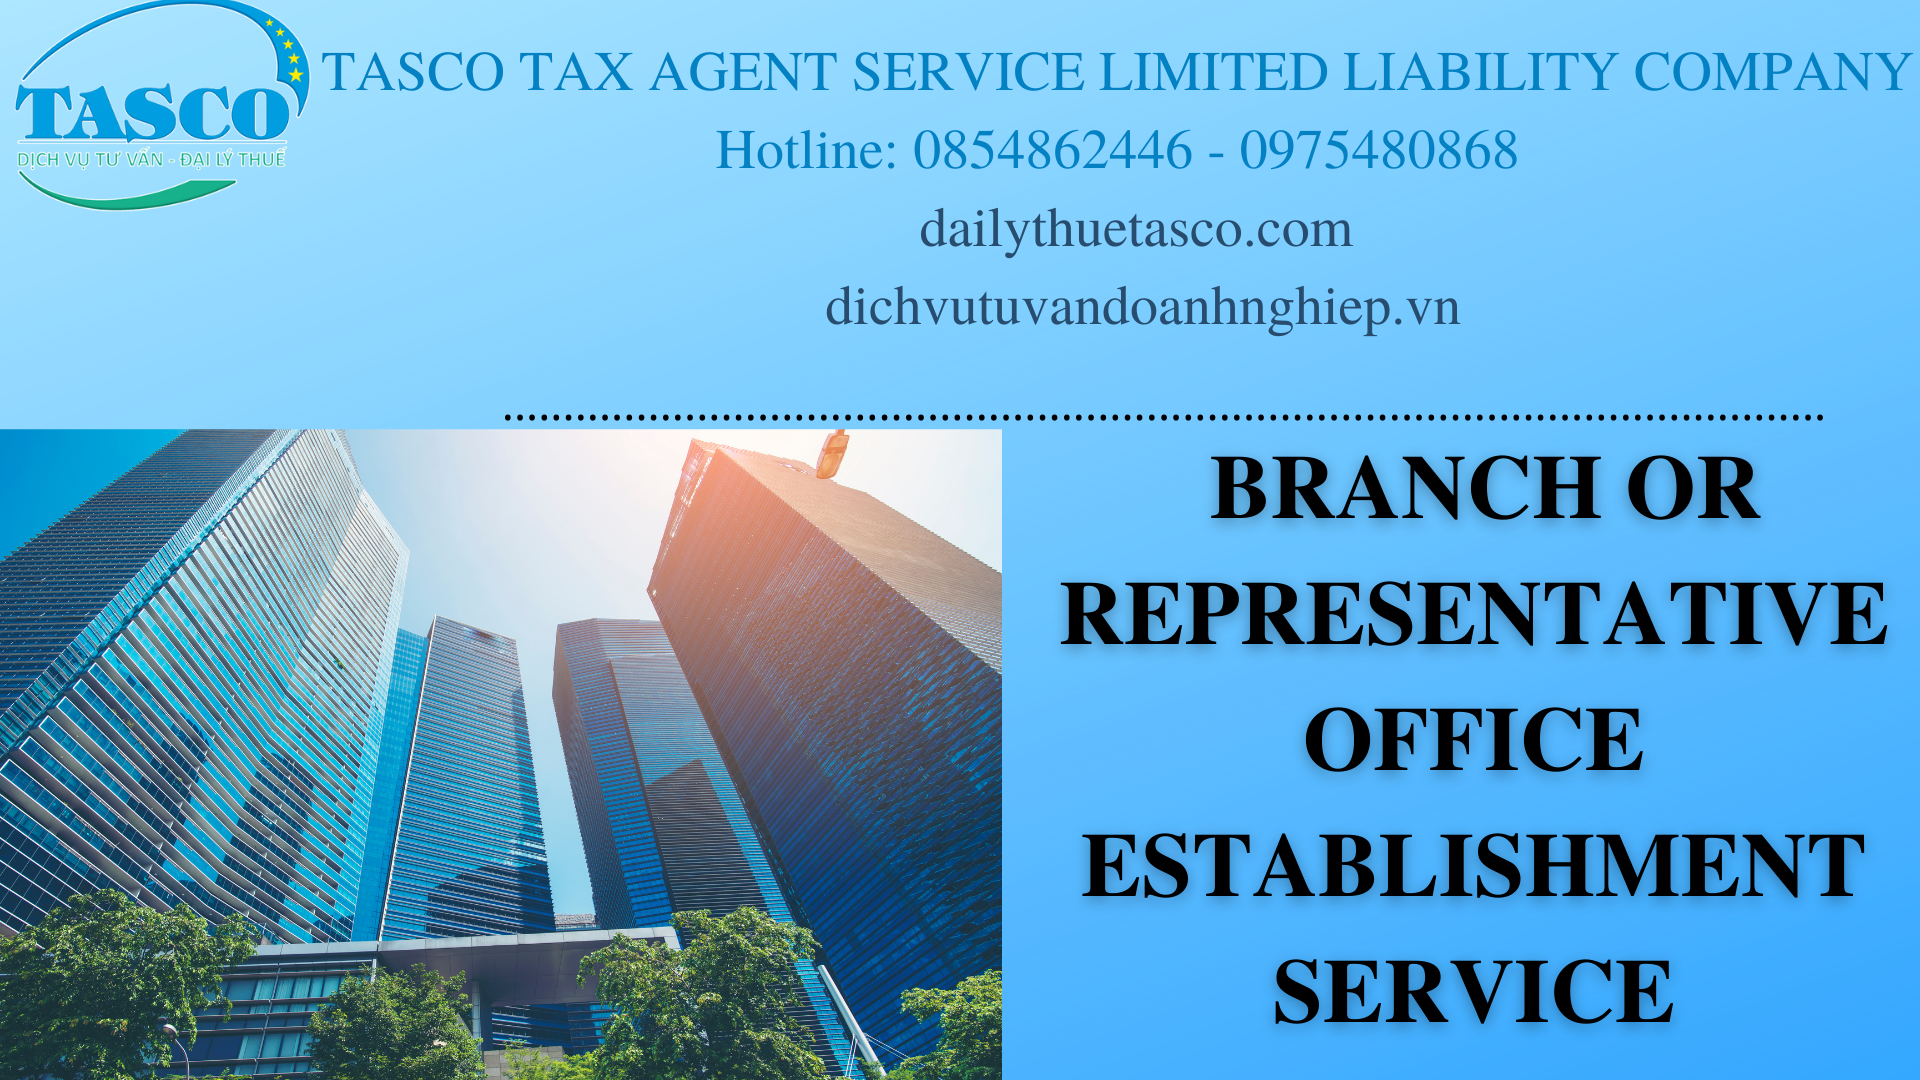 BRANCH OR REPRERSENTATIVE OFFICE ESTABLISHMENT SERVICE